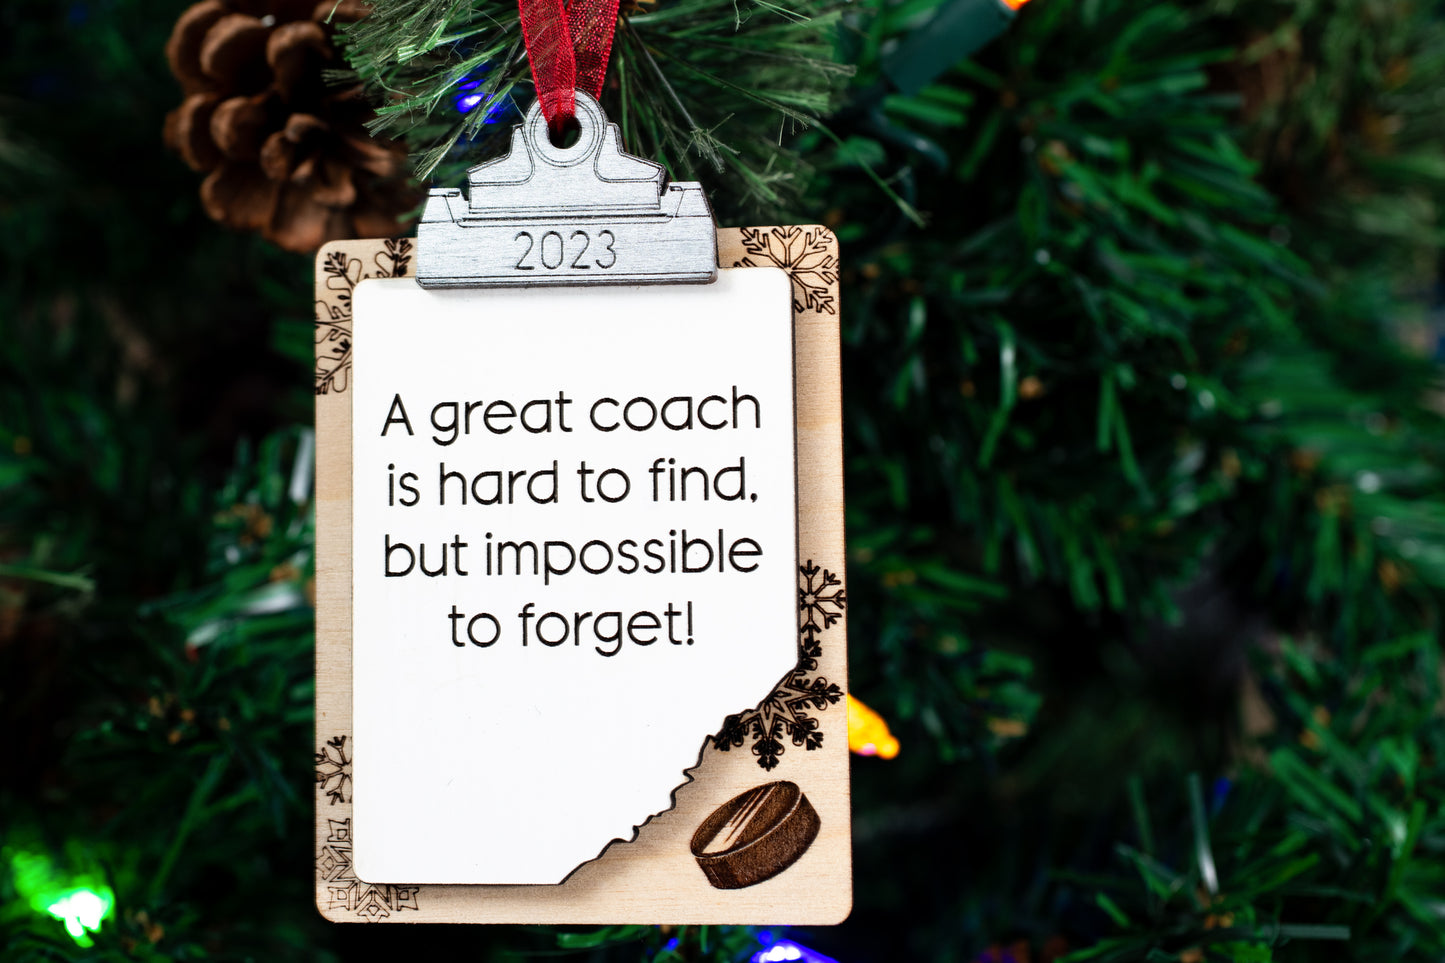 Personalized Coach Appreciation Clip Board Ornament